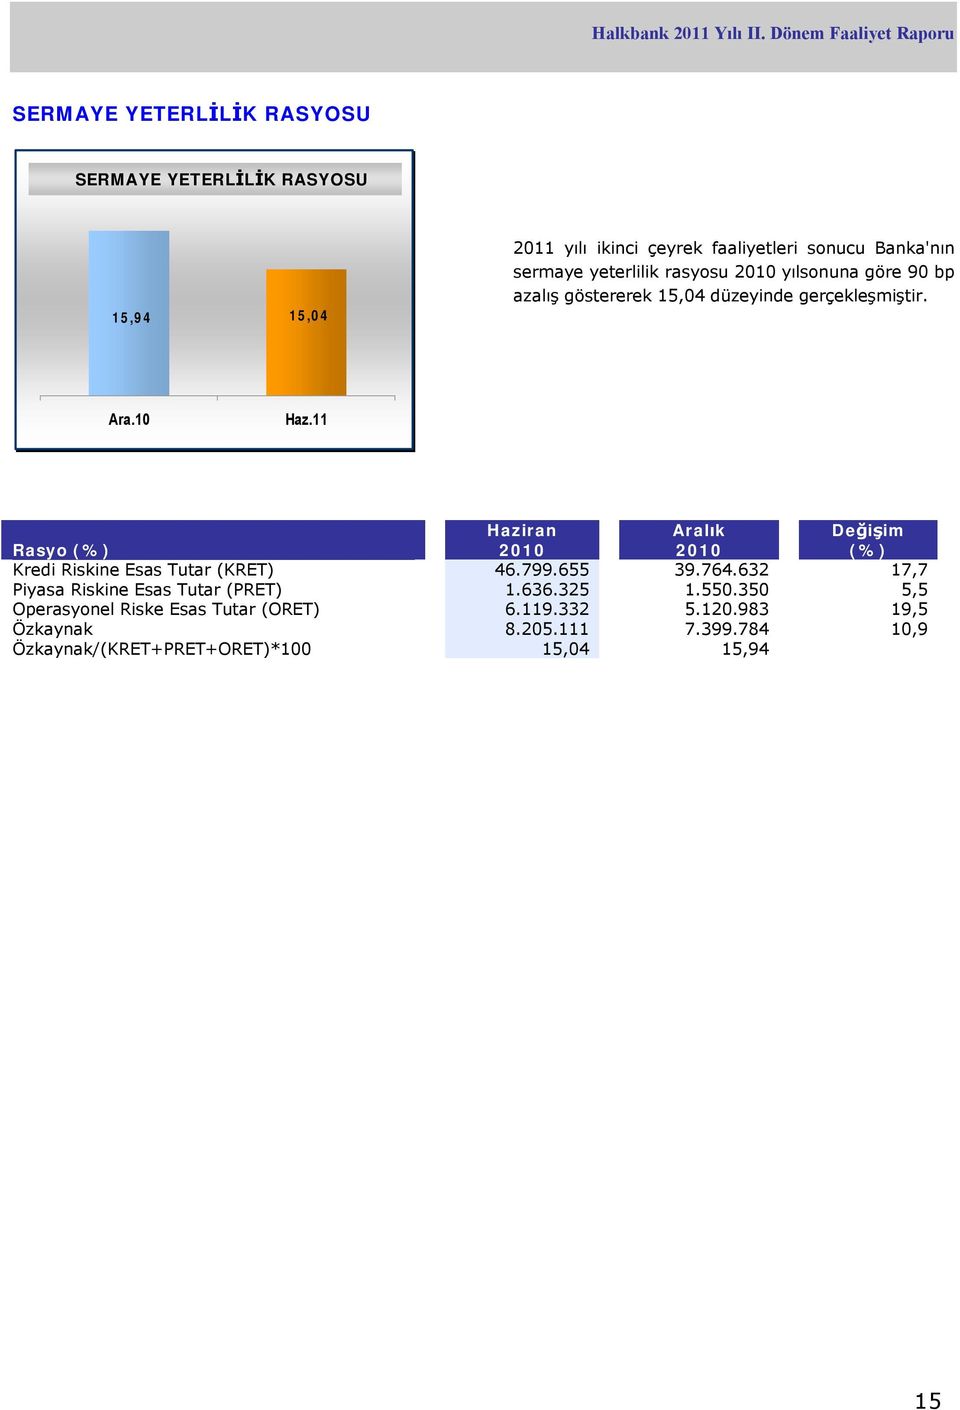 10 Rasyo (%) Haziran 2010 Aralık 2010 Değişim (%) Kredi Riskine Esas Tutar (KRET) 46.799.655 39.764.